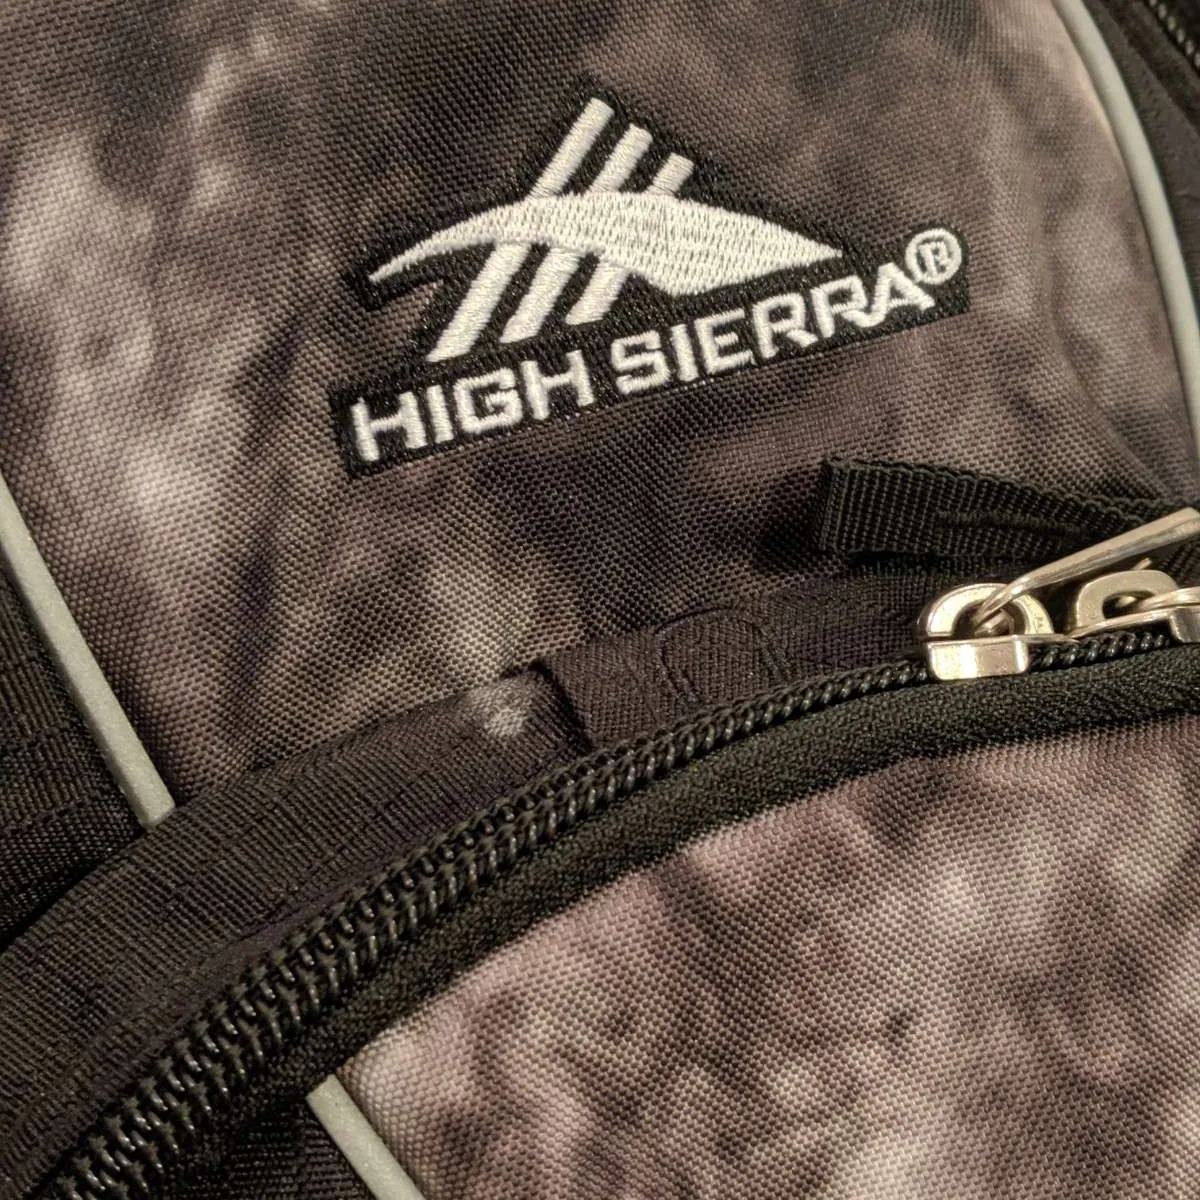 High Sierra Swerve Backpack photo 4